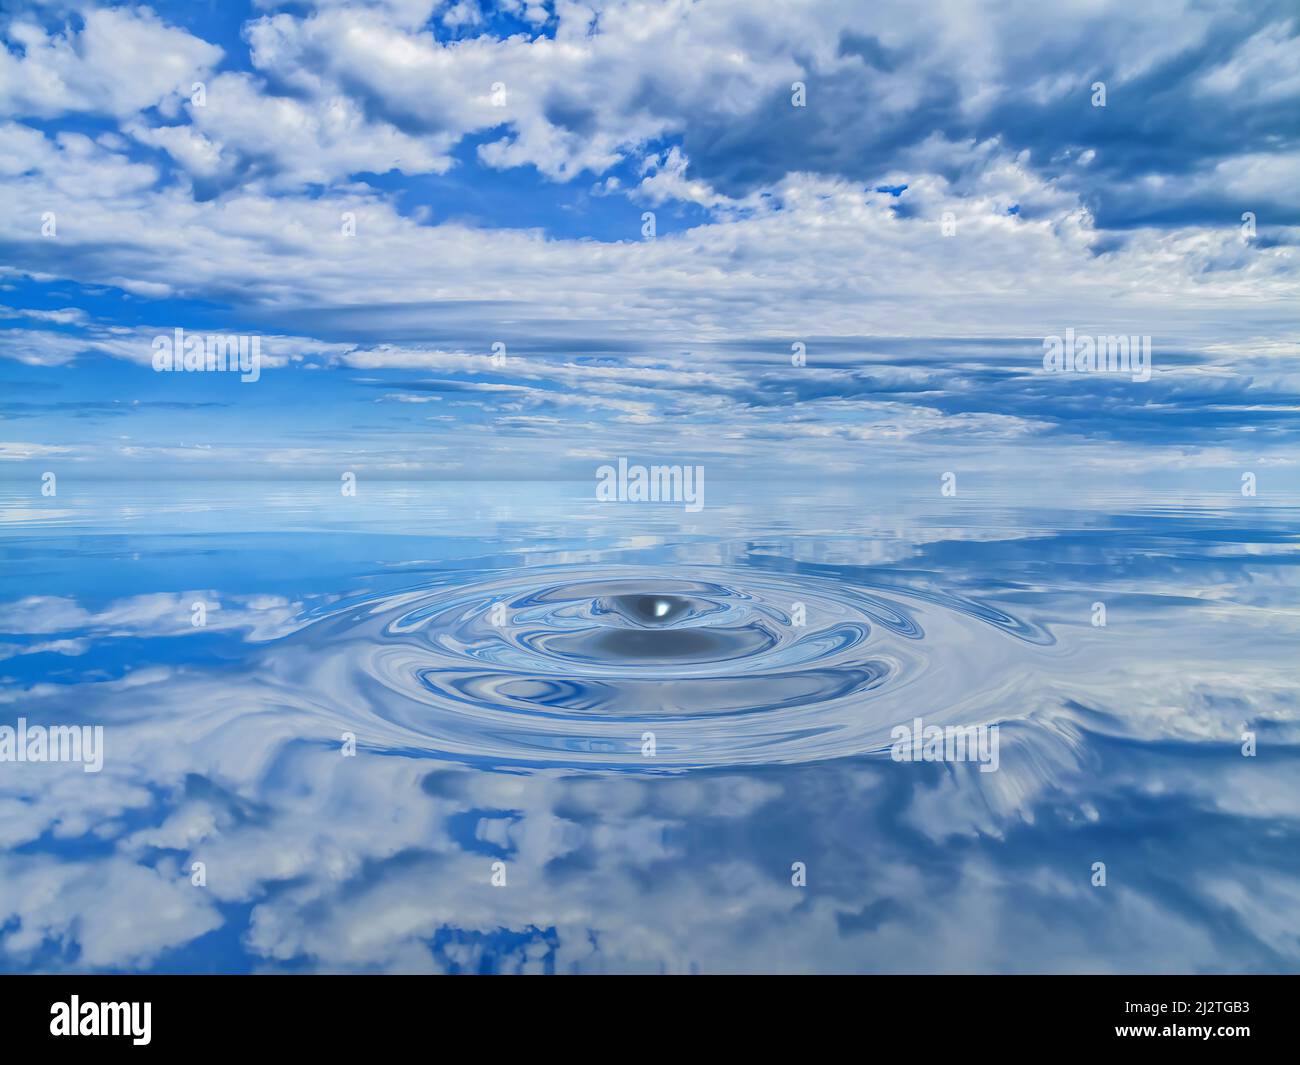 El cielo nublado se reflejó en ondulaciones en agua azul fría Foto de stock